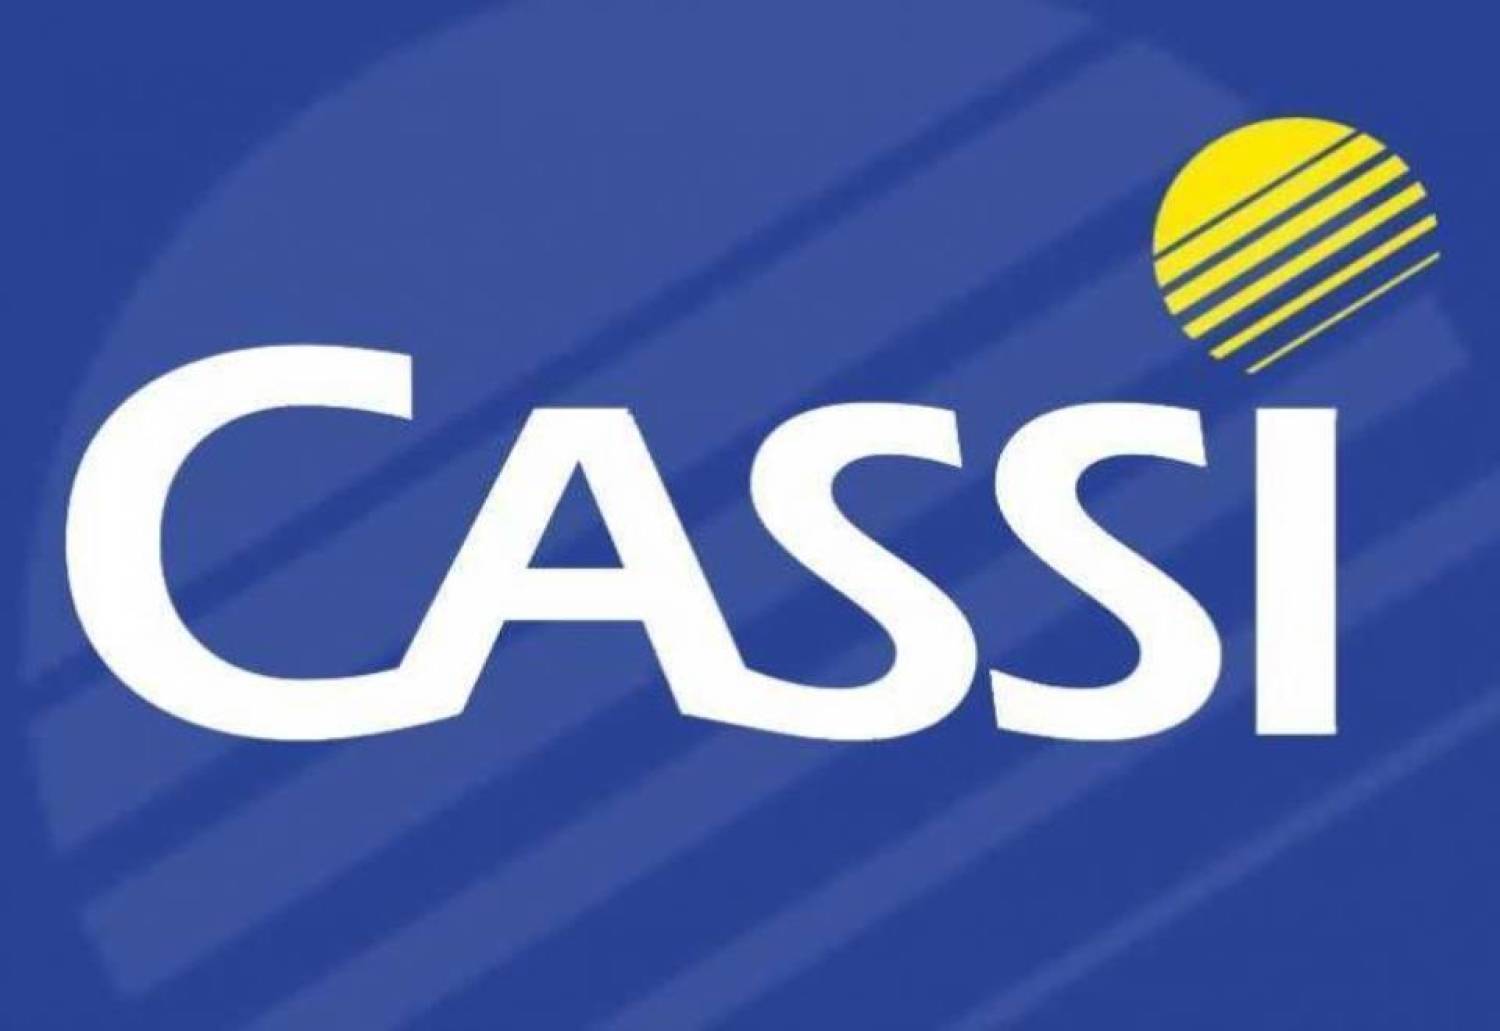 Maioria absoluta rejeita alteração estatutária da Cassi